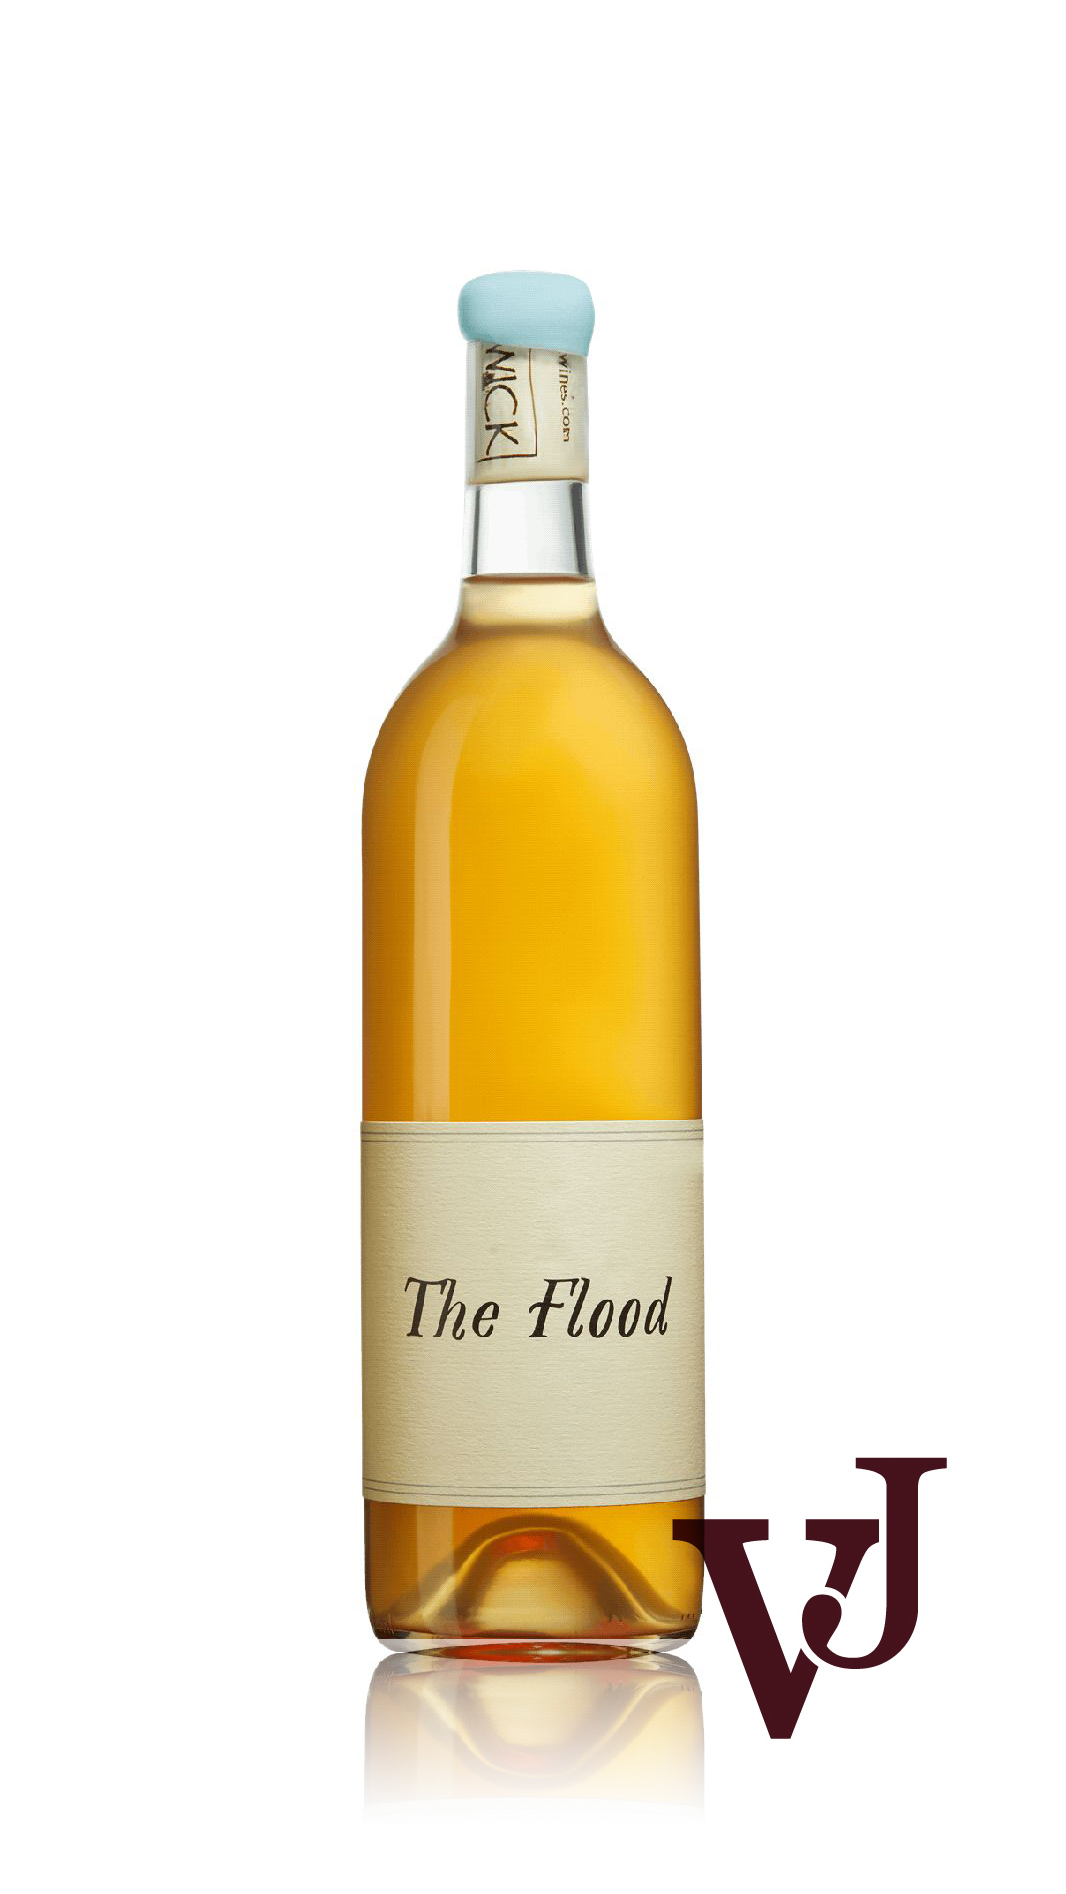 Vitt Vin - Swick Wines The Flood 2022 artikel nummer 9298501 från producenten Swick Wines från området USA.